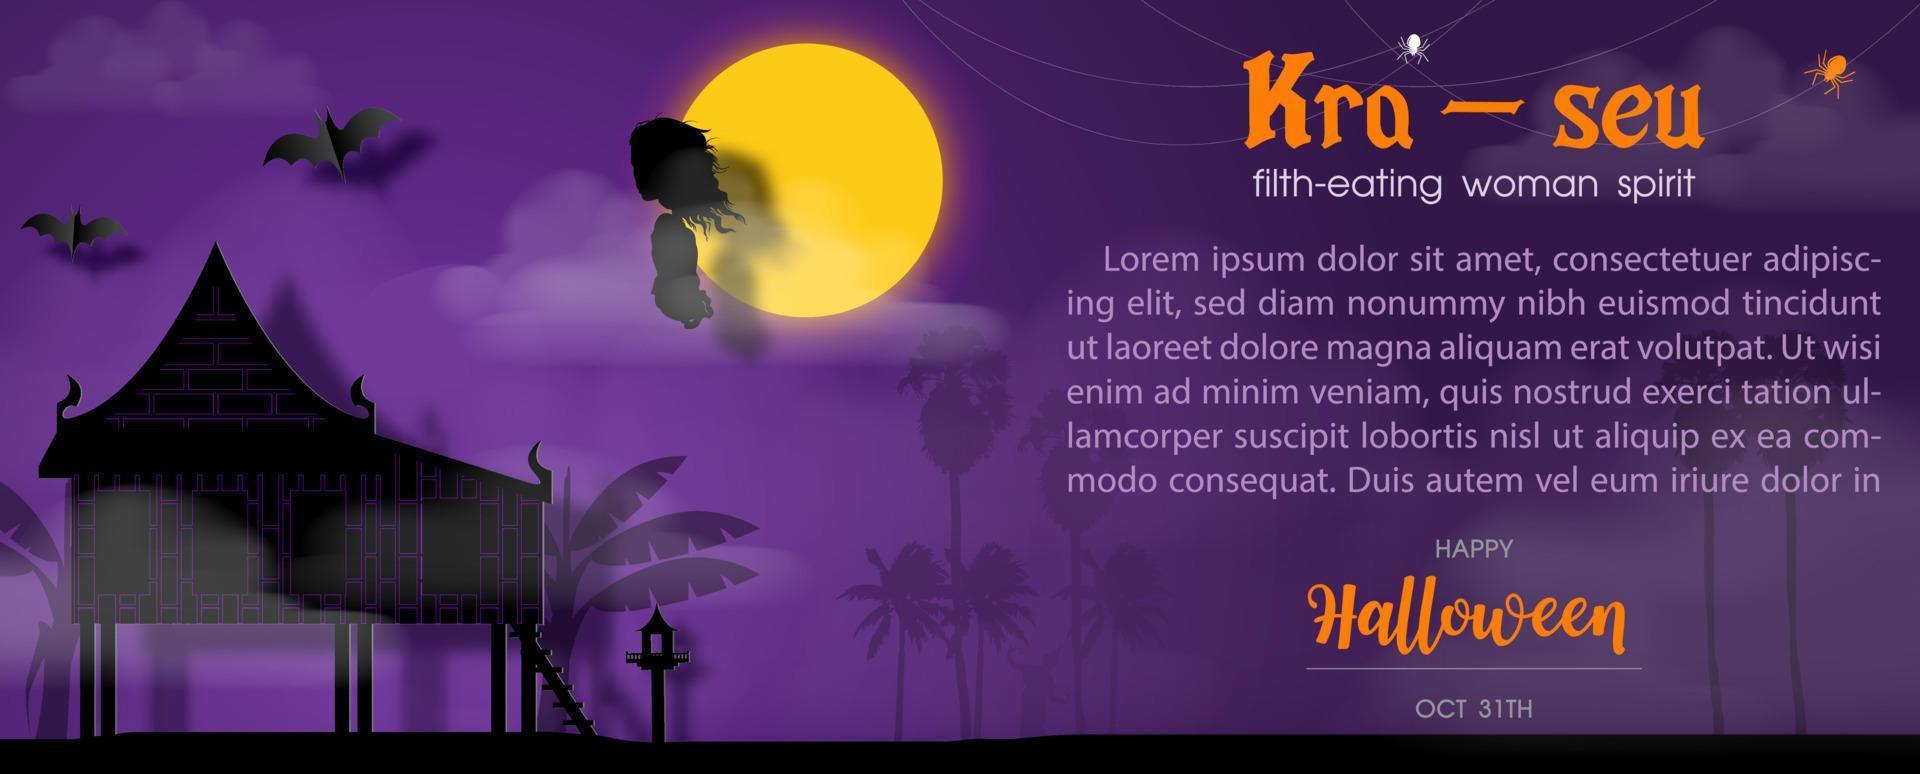 tailandese il male spirito con il nomi kra-seu e esempio testi su pieno Luna, silhouette tailandese Casa e nebbia scena viola sfondo. vettore